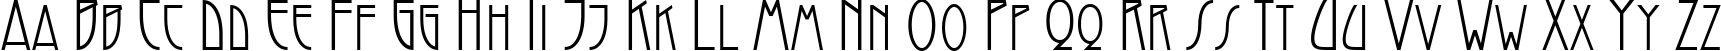 Пример написания английского алфавита шрифтом Modernist Nouveau